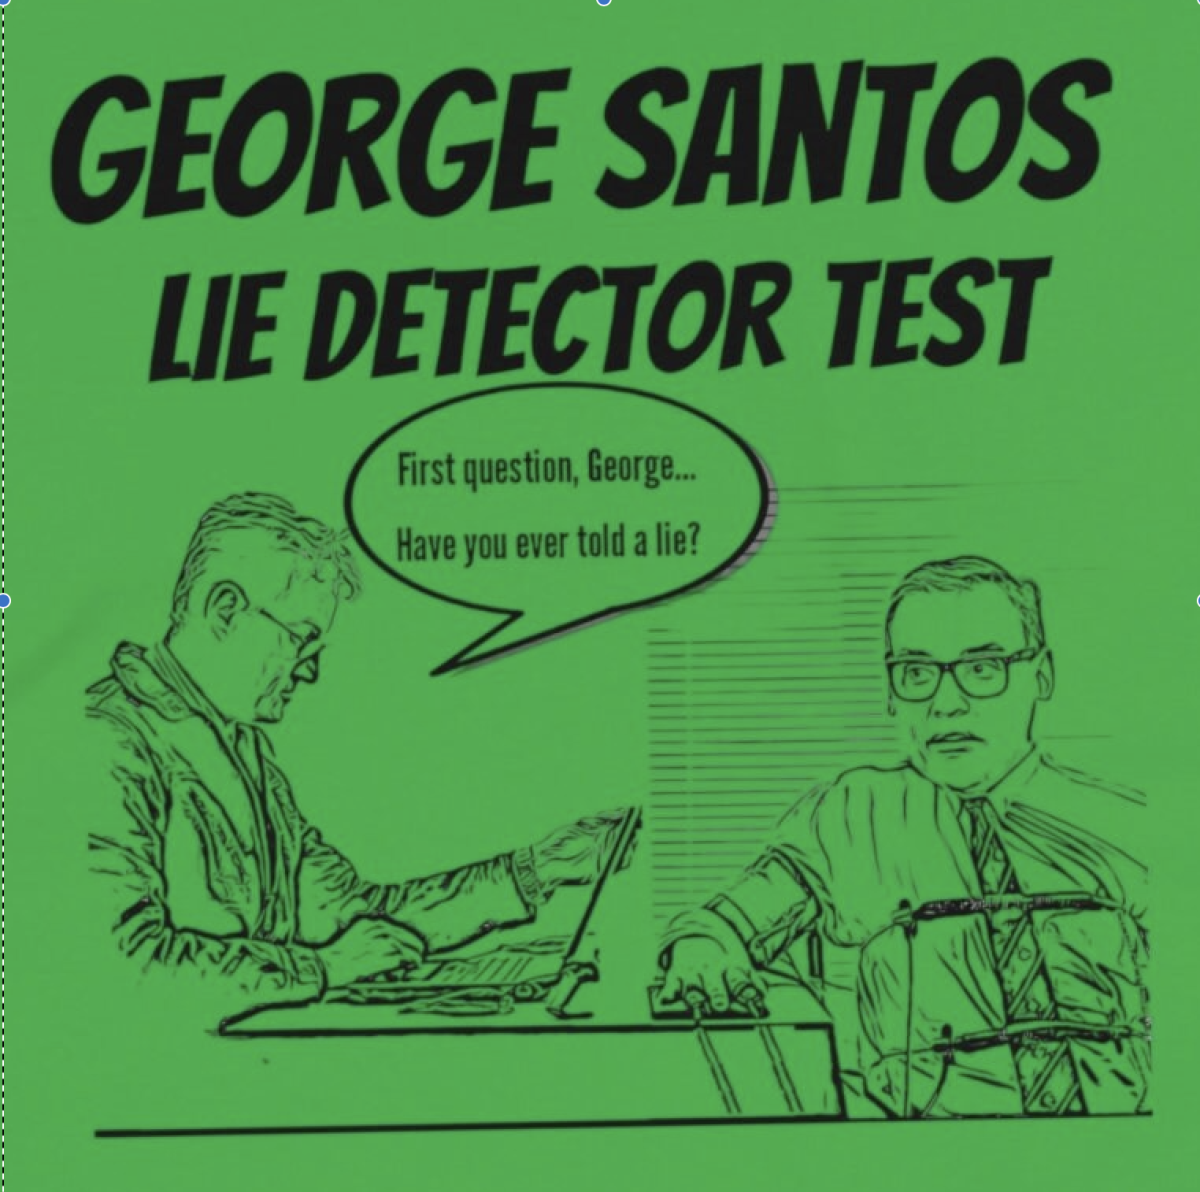 George Santos’ Web of Lies